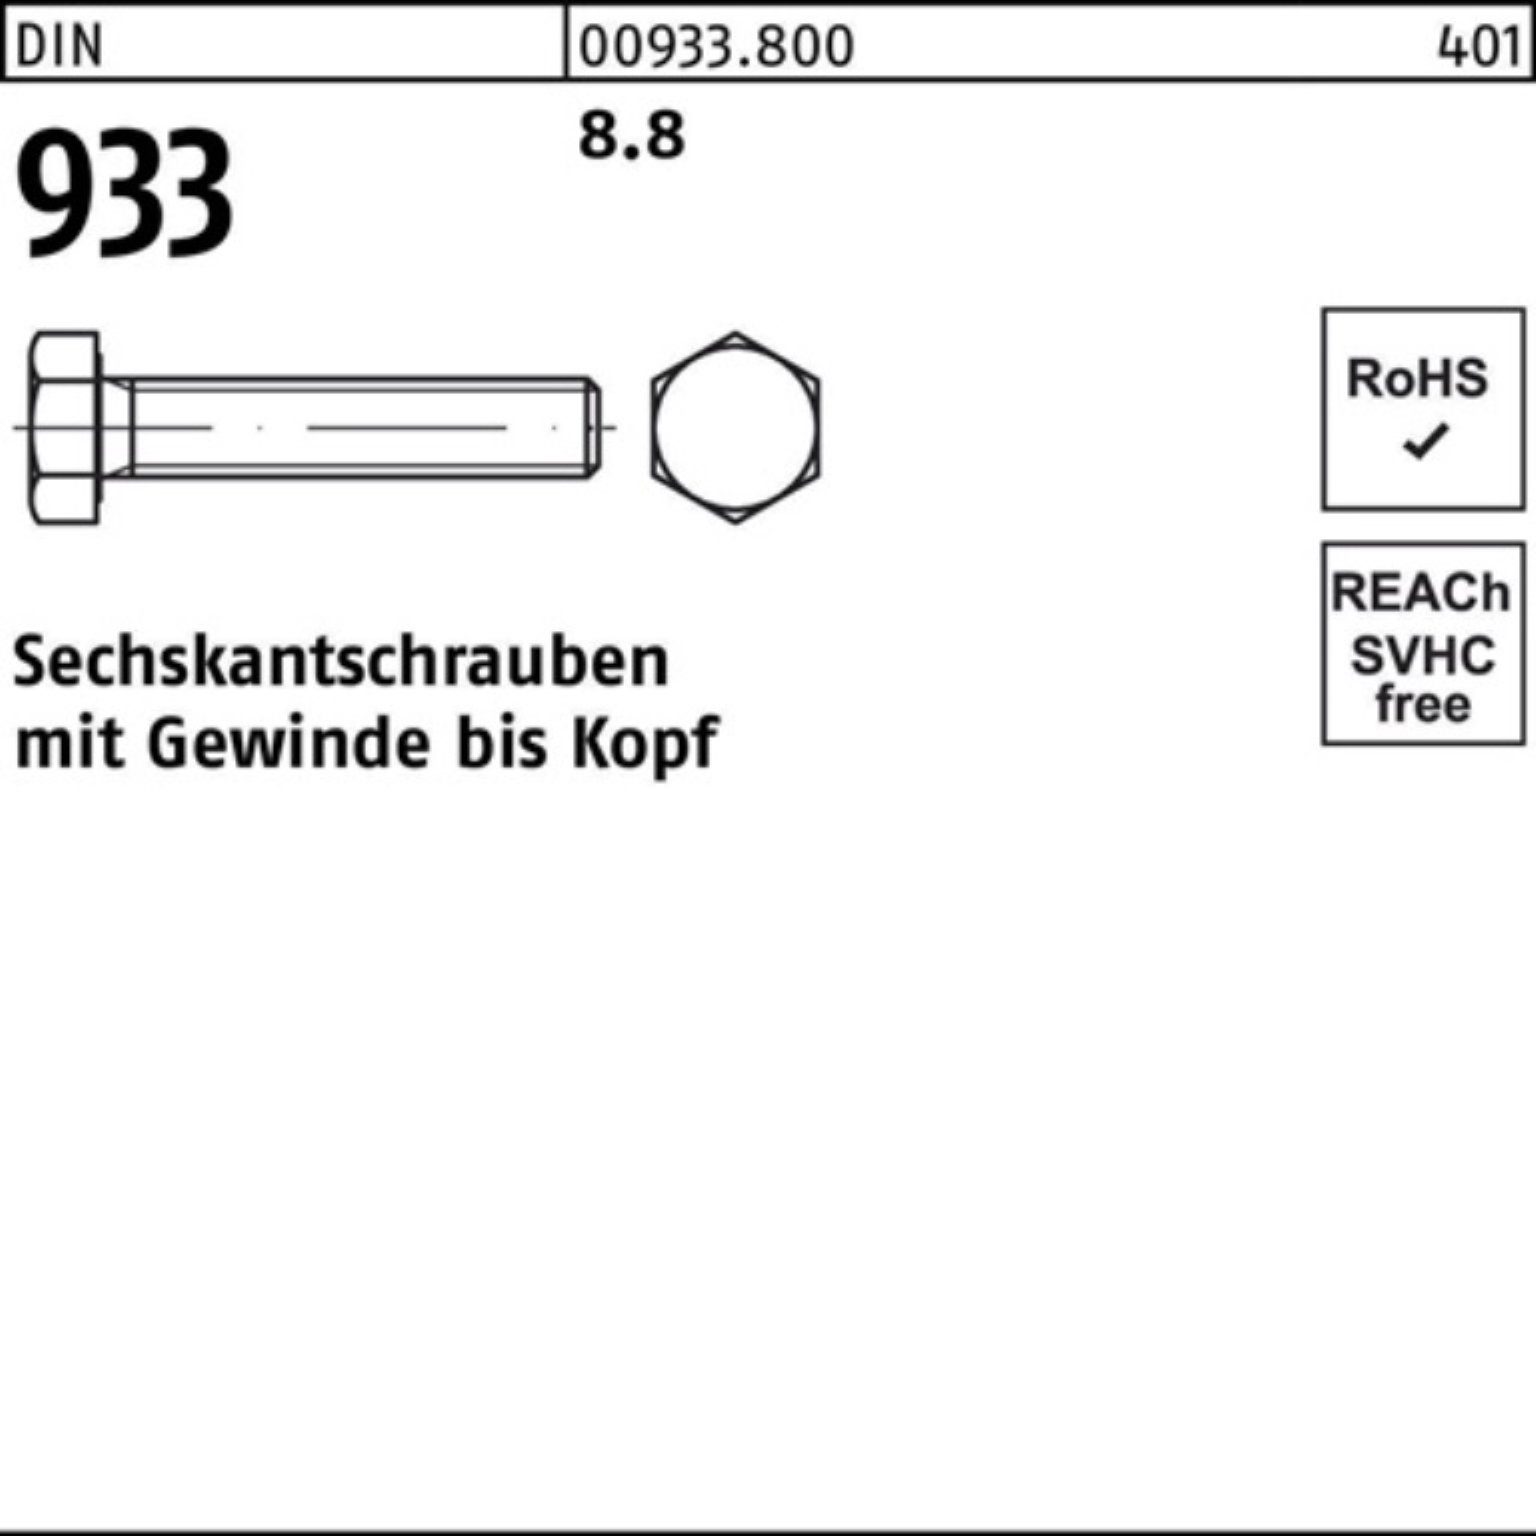 25 8.8 DIN Sechskantschraube 20 M20x Pack 933 100er VG DIN Stück Sechskantschraube Reyher 933